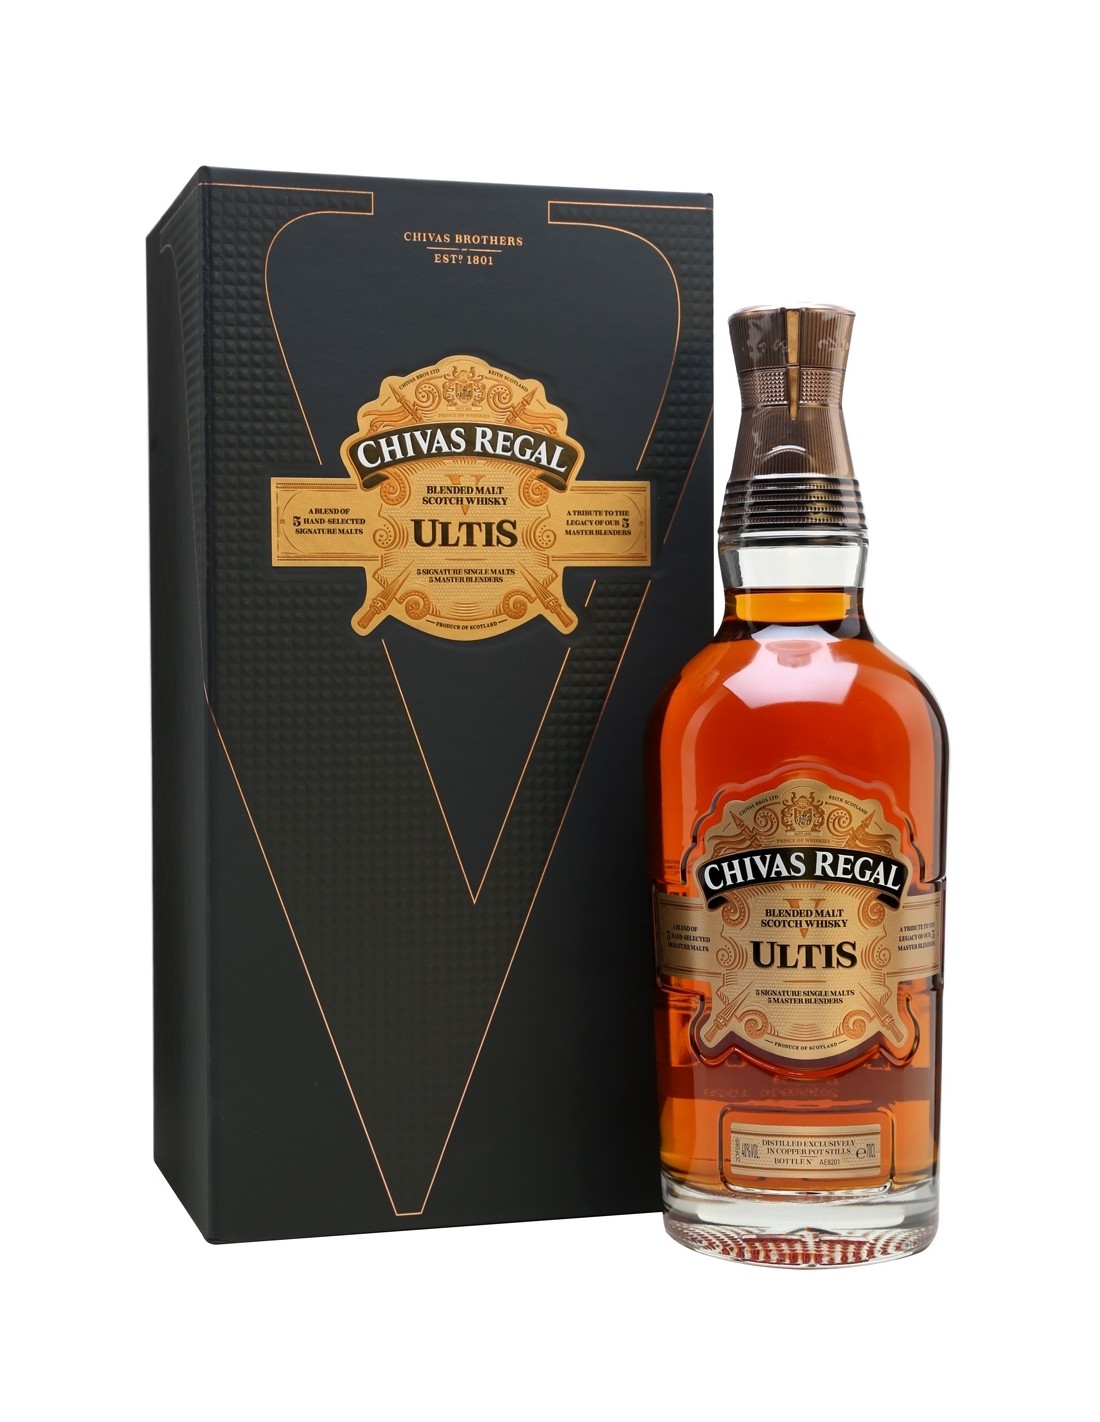 Whisky Chivas Regal Ultis 0.7L, 40% alc., Scotia alcooldiscount.ro